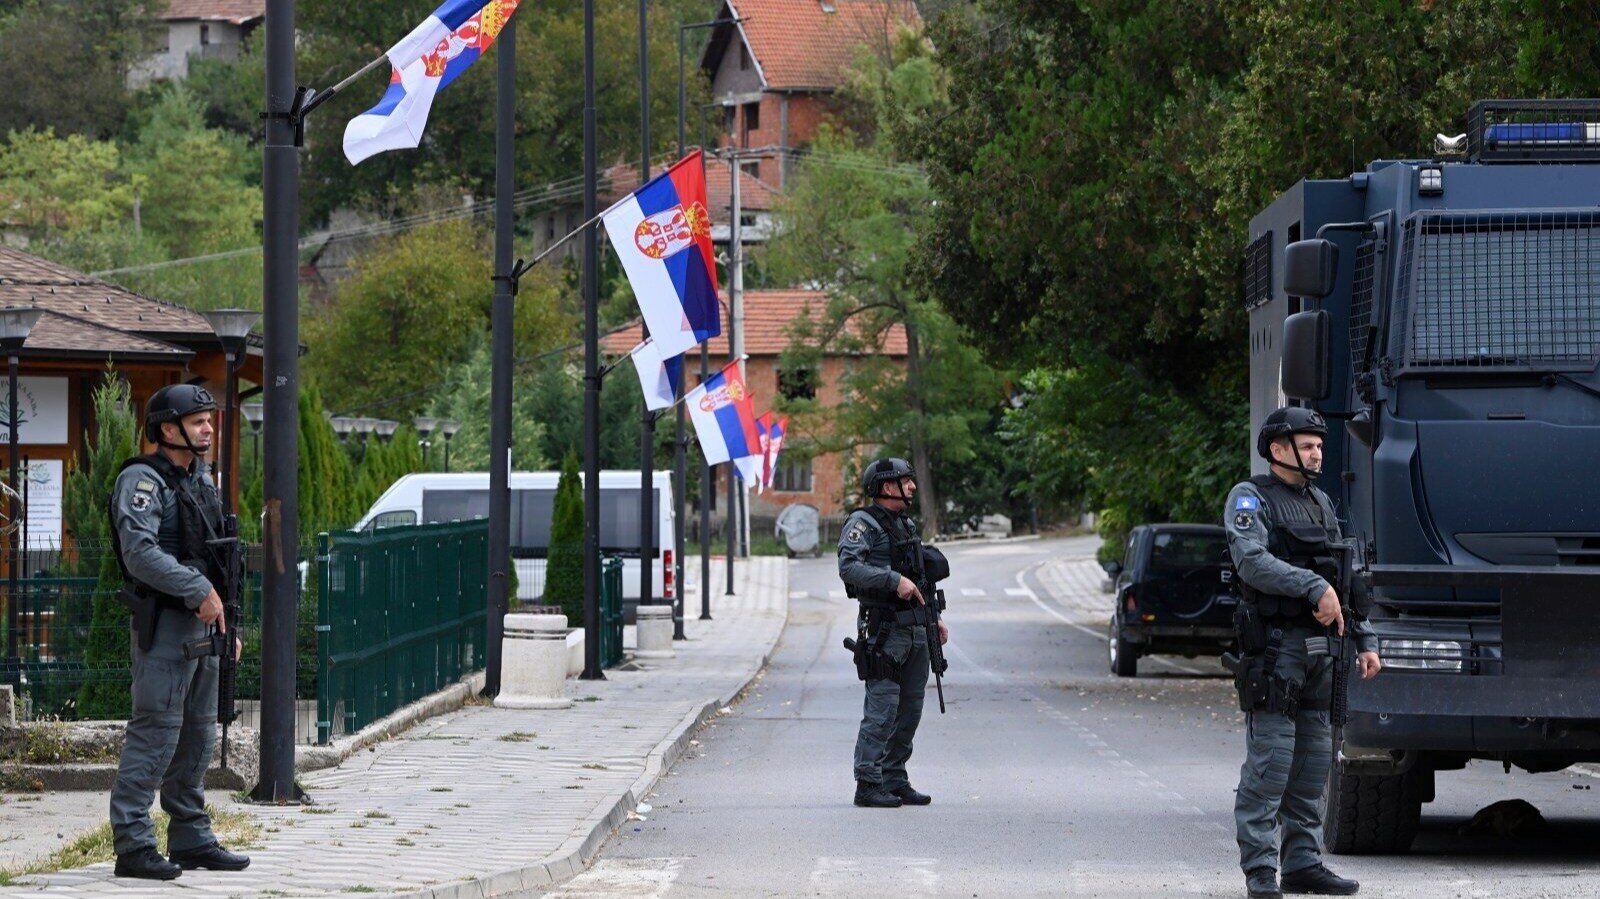 Kosowo zarzuca Serbii próbę przejęcia terytorium. Wskazuje na dowody